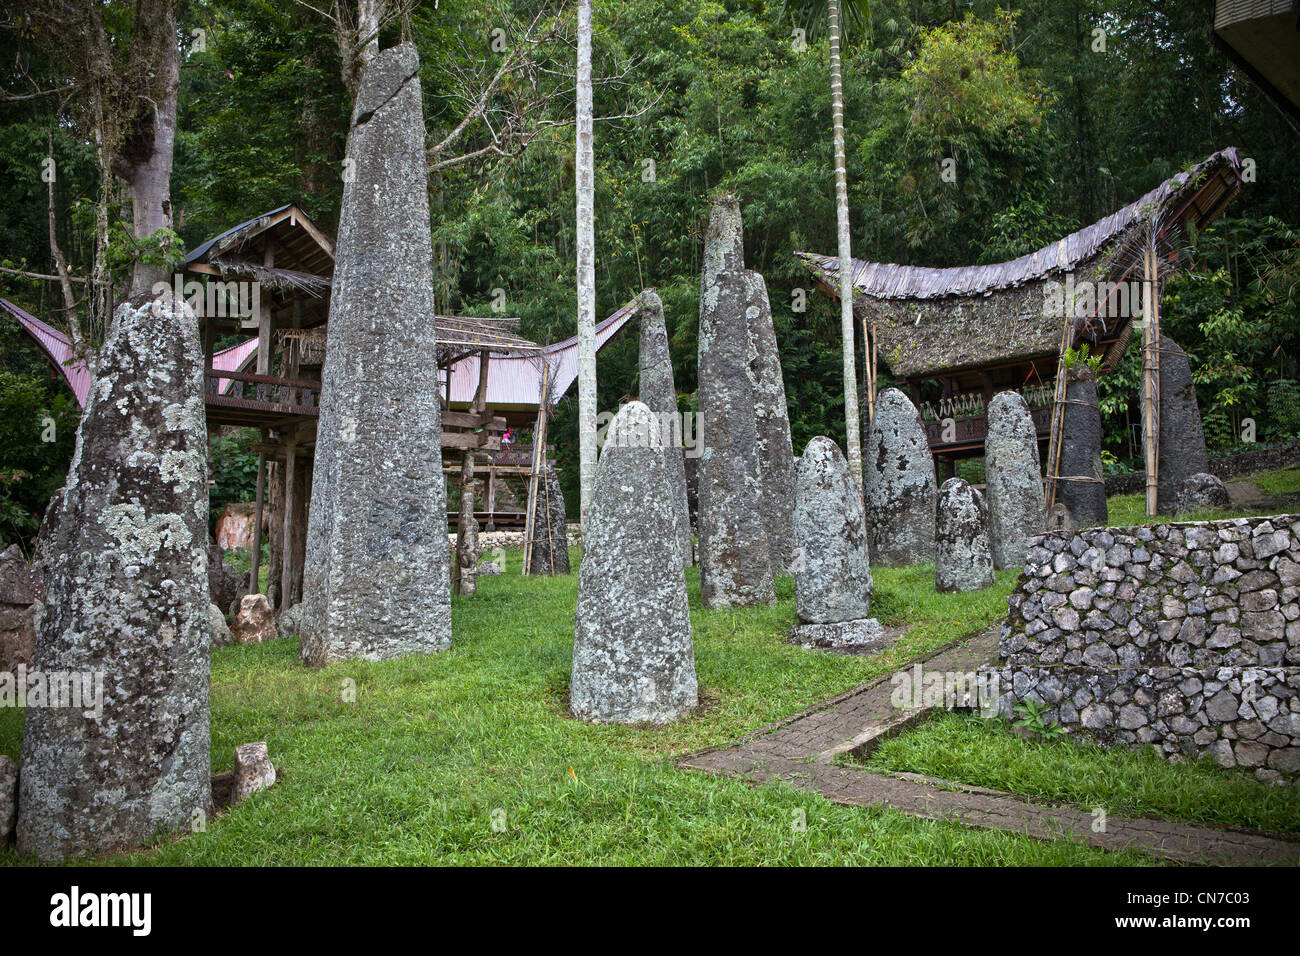 L'Indonésie, Sulawesi, Tana Toraja, village Bori, pierre mégalithe de la tombe. Banque D'Images